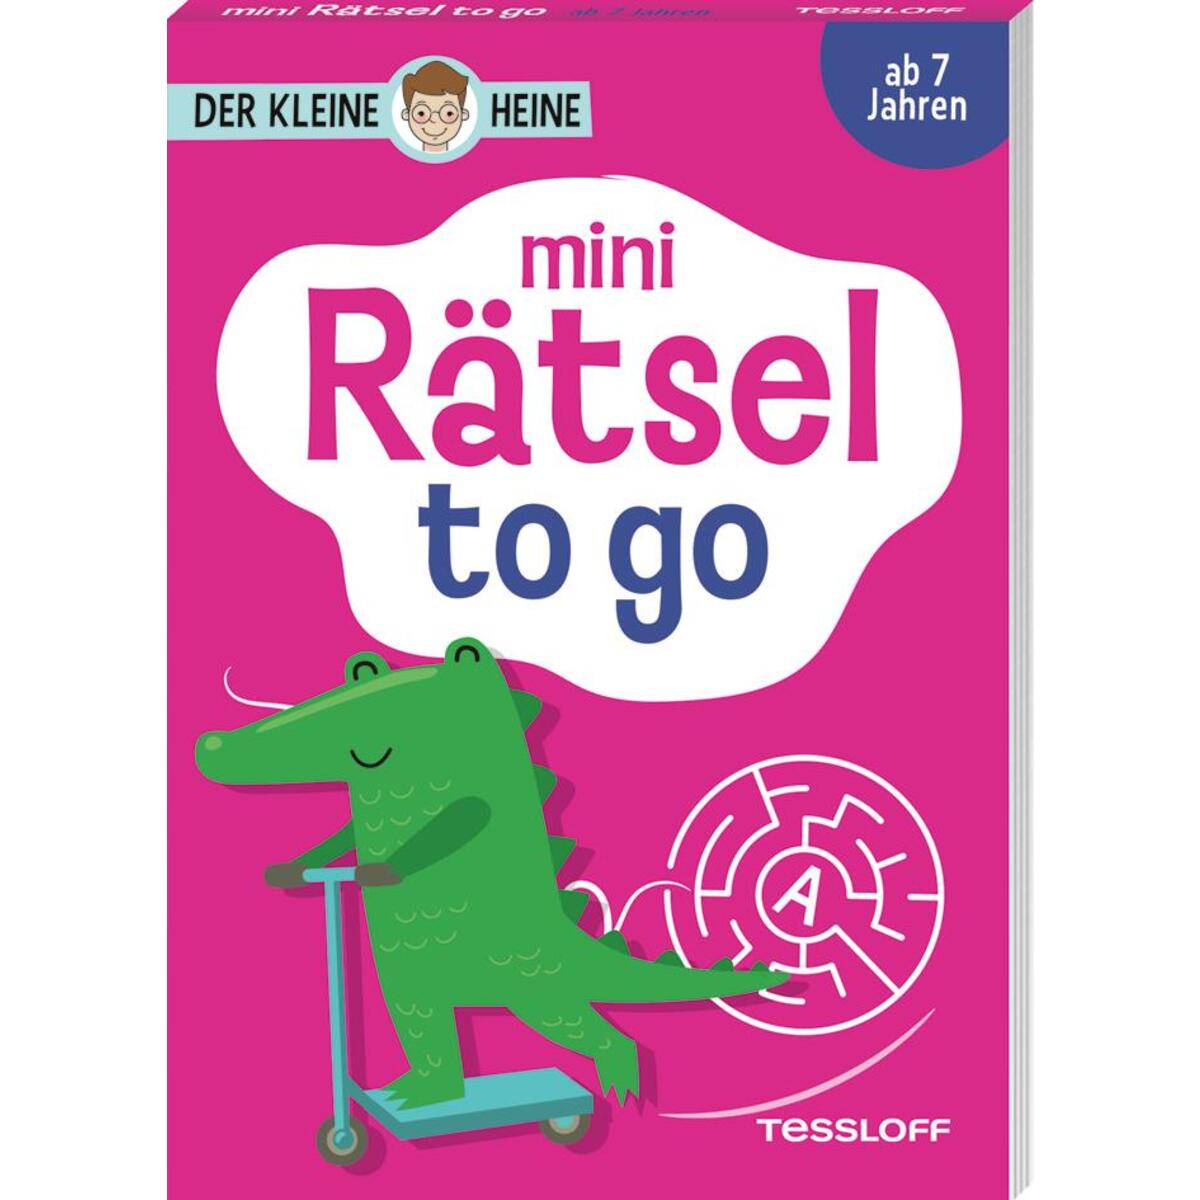 Der kleine Heine. Mini Rätsel to go. Ab 7 Jahren von Tessloff Verlag